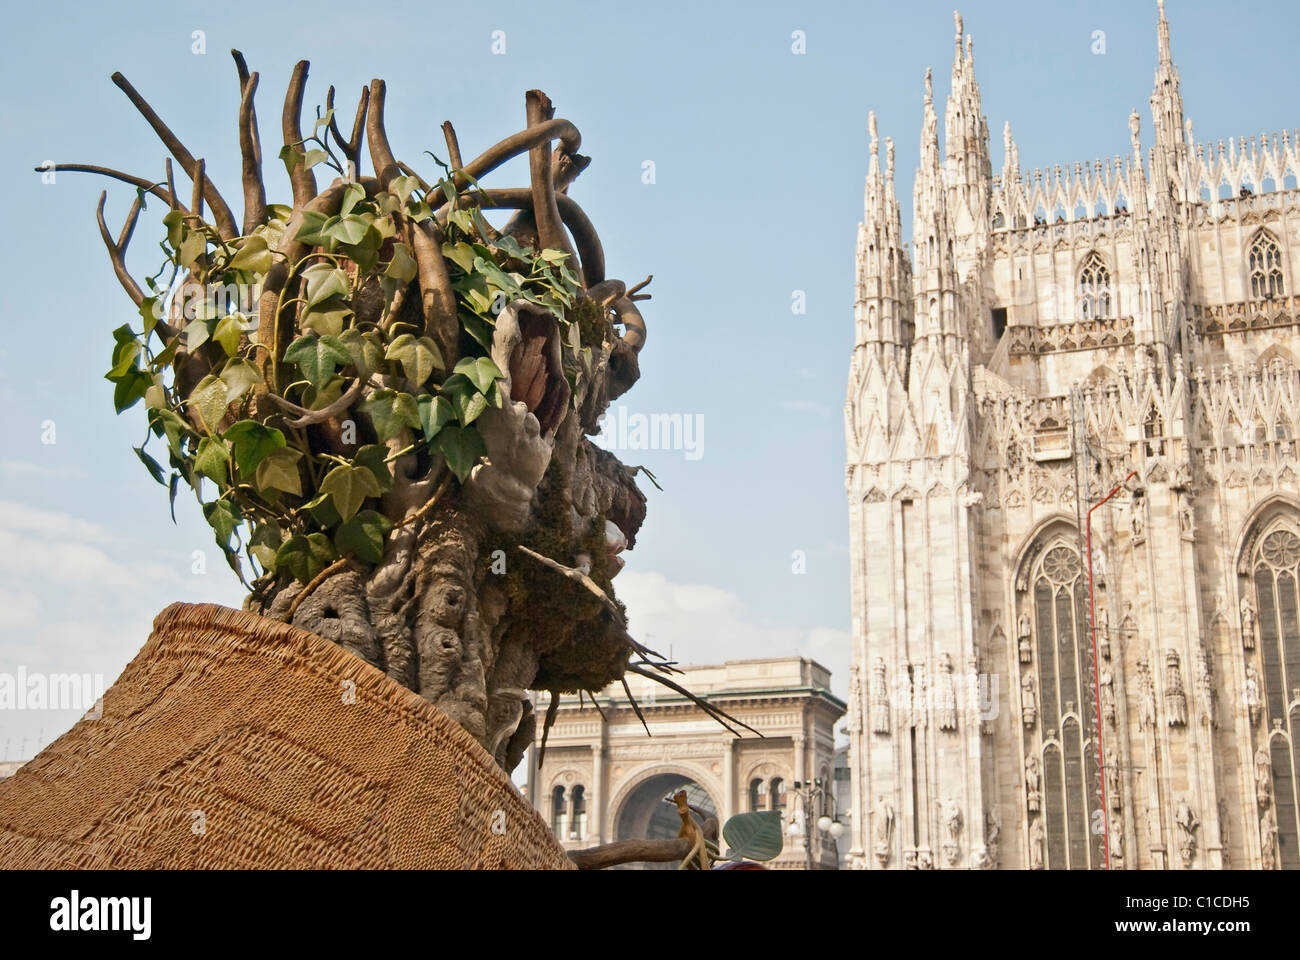 L'hiver, une sculpture par Philip Haas, inspiré par le "Faust" de l'artiste Arcimboldo Renaissance Italienne Banque D'Images